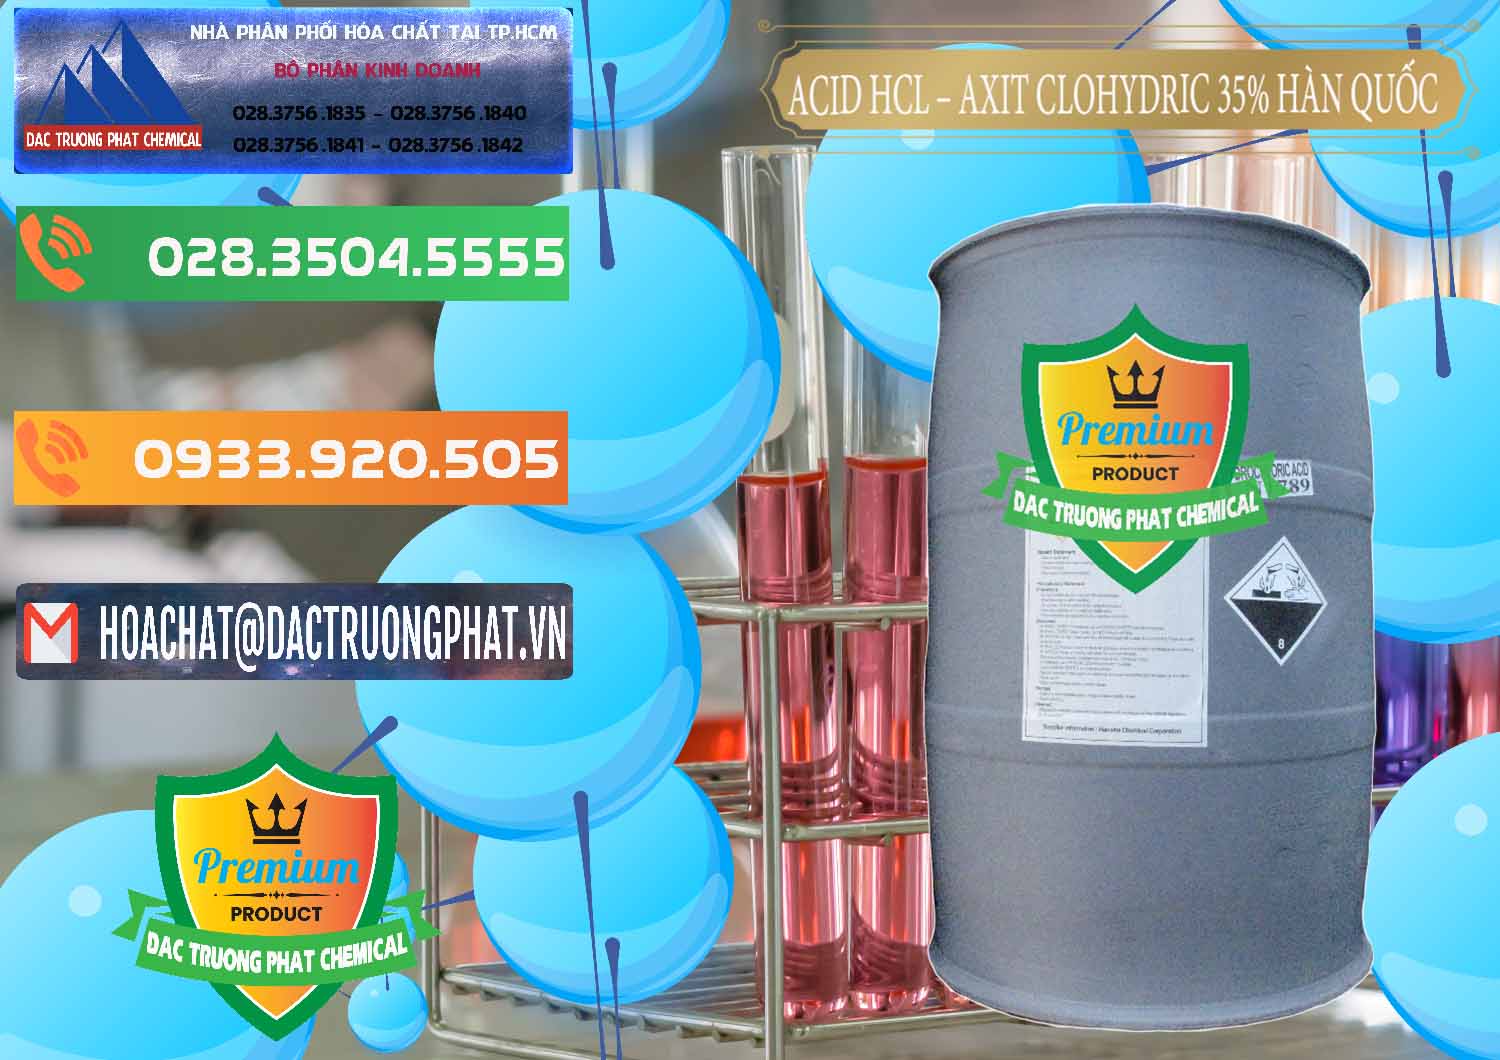 Chuyên bán - cung cấp Acid HCL - Axit Cohidric 35% Hàn Quốc Korea - 0011 - Đơn vị chuyên nhập khẩu - cung cấp hóa chất tại TP.HCM - hoachatxulynuoc.com.vn